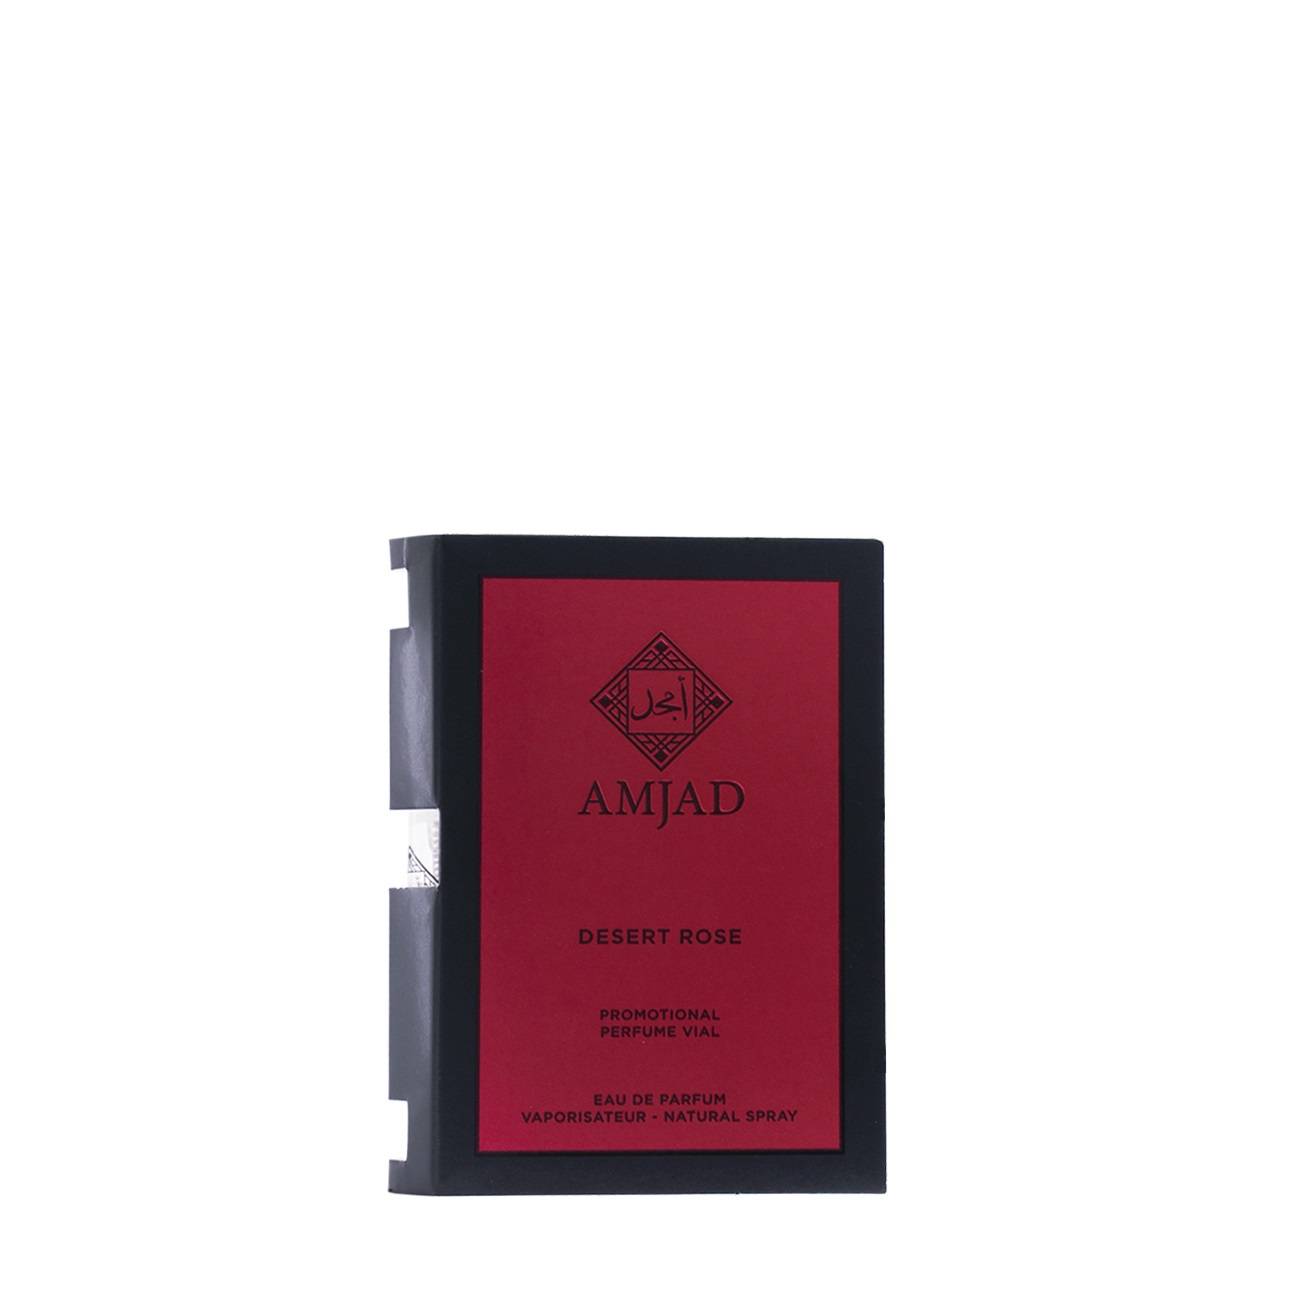 Amjad Desert Rose Edp Sample 3ml 3 ml bestvalue